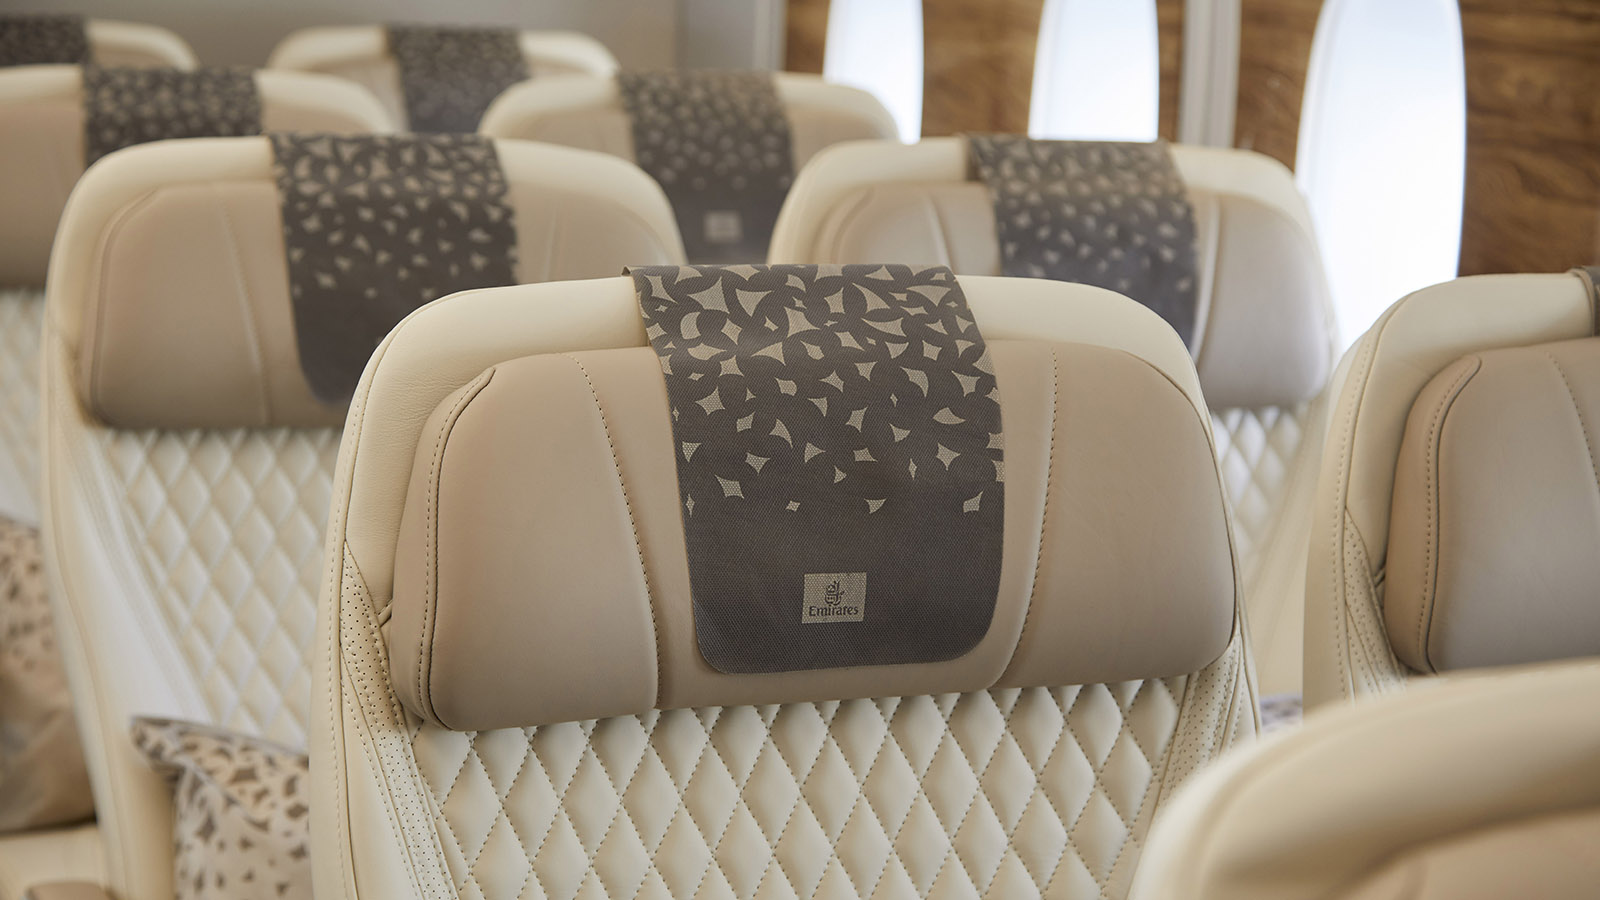 Emirates' Premium Economy Class seat